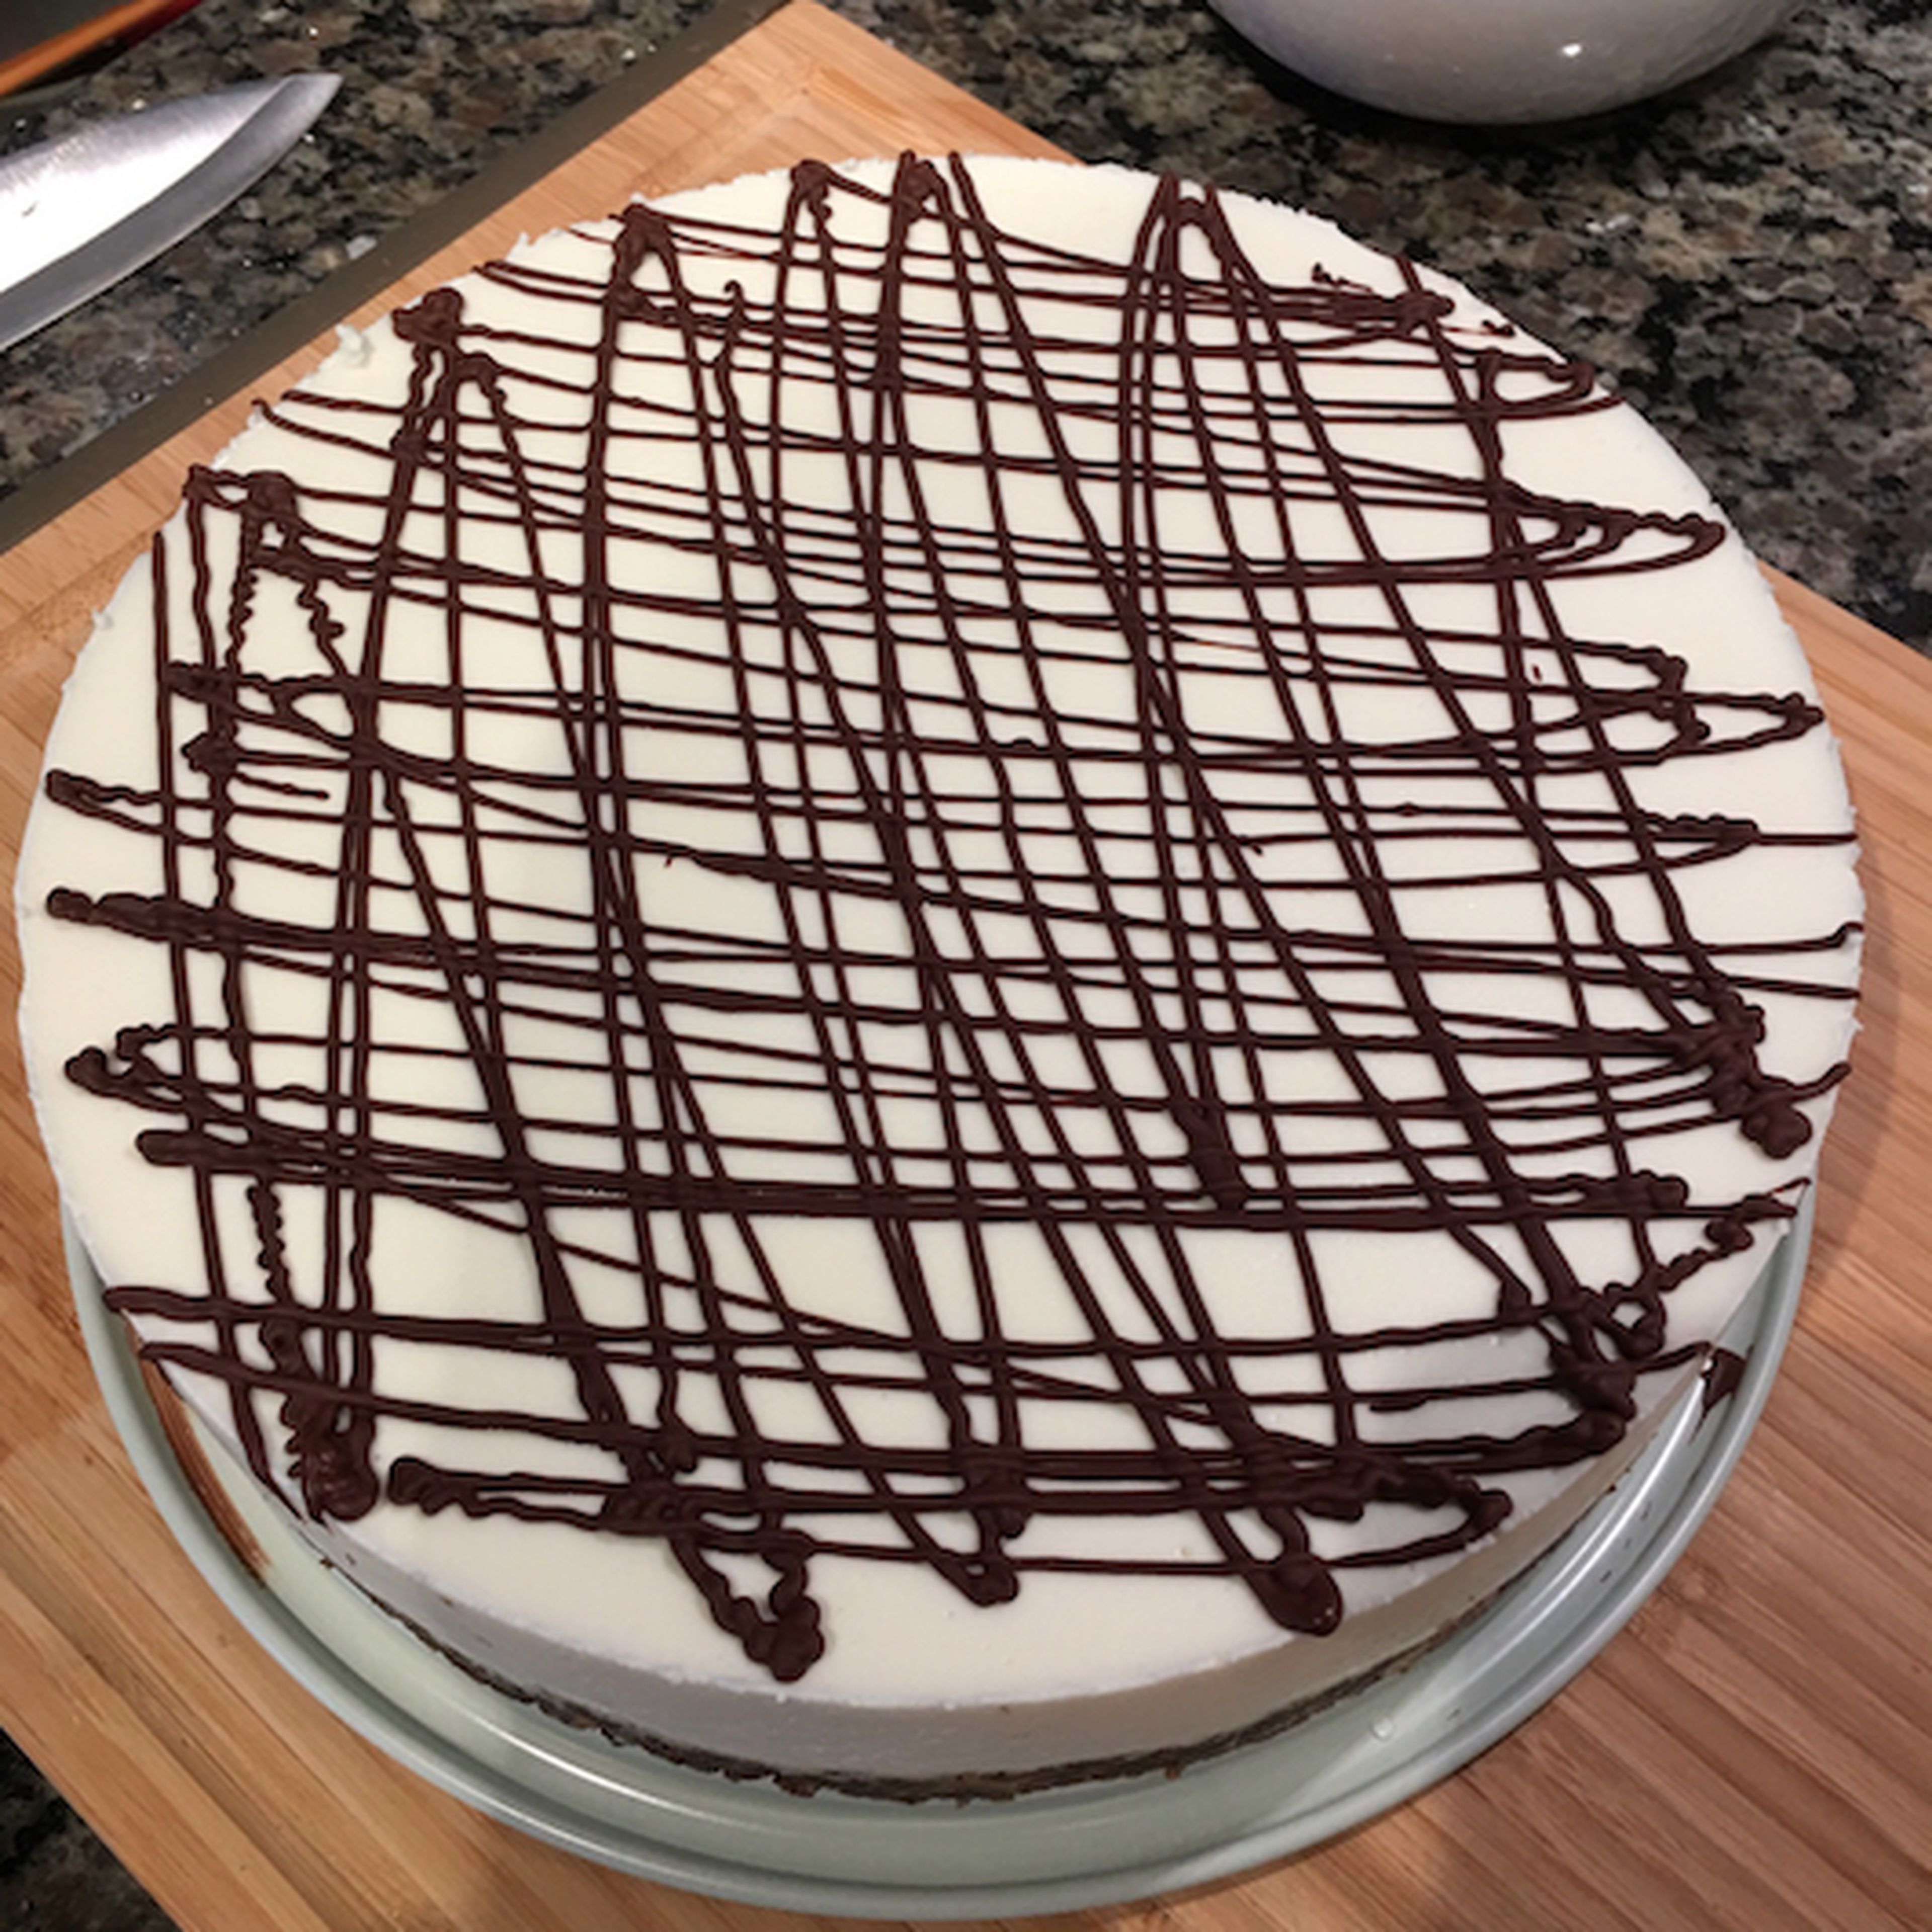 White chocolate cheesecake